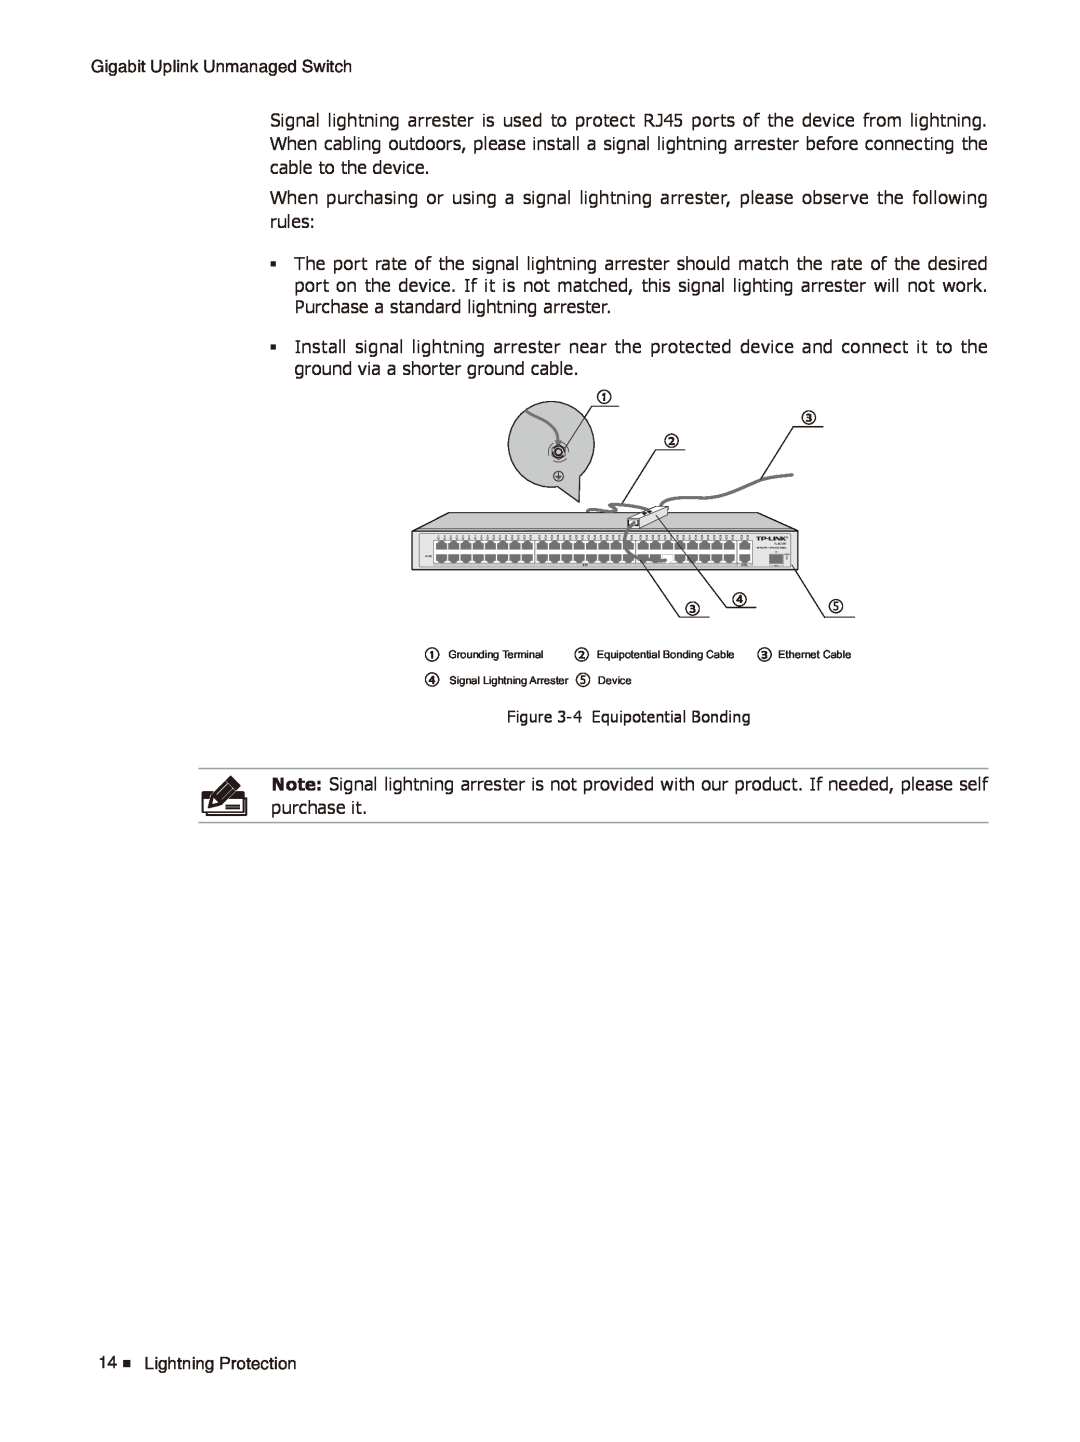 TP-Link TL-SL1226/TL-SL1351 manual 4 Equipotential Bonding, Grounding Terminal, Equipotential Bonding Cable 